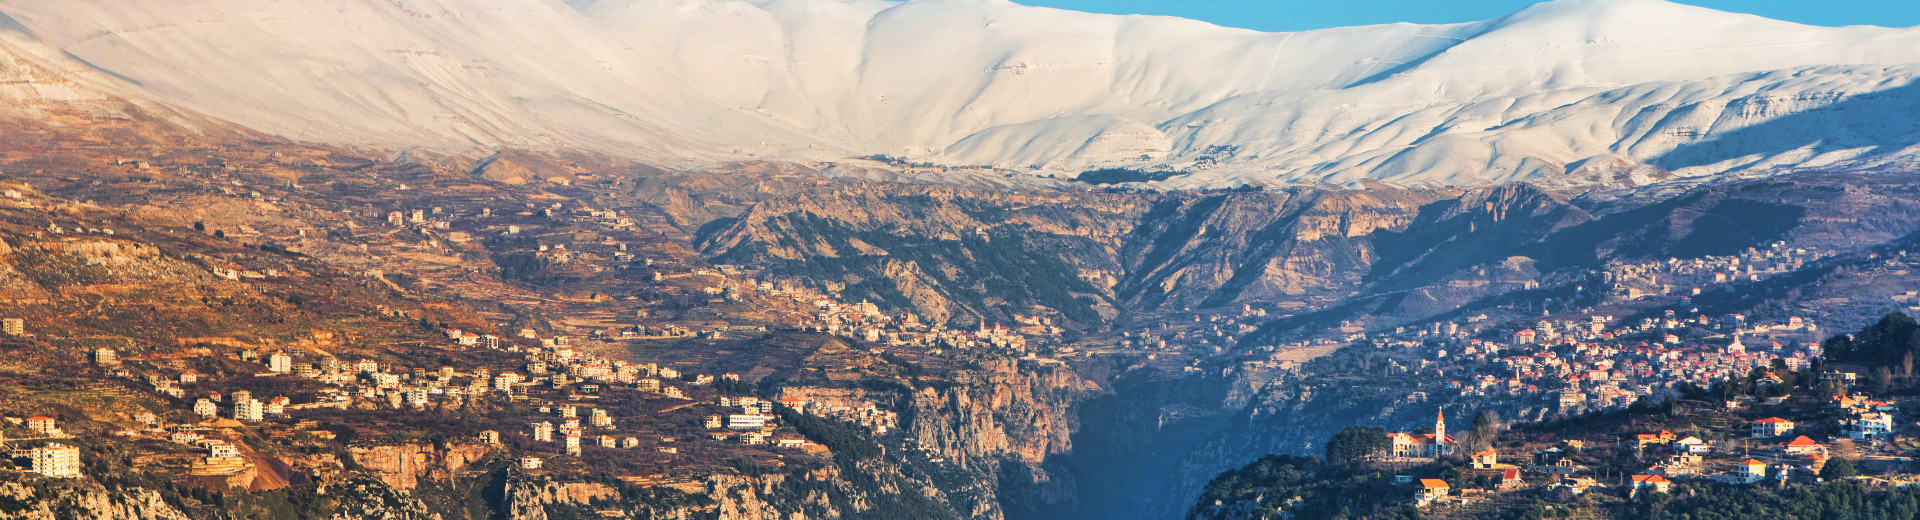 Reizen naar Libanon